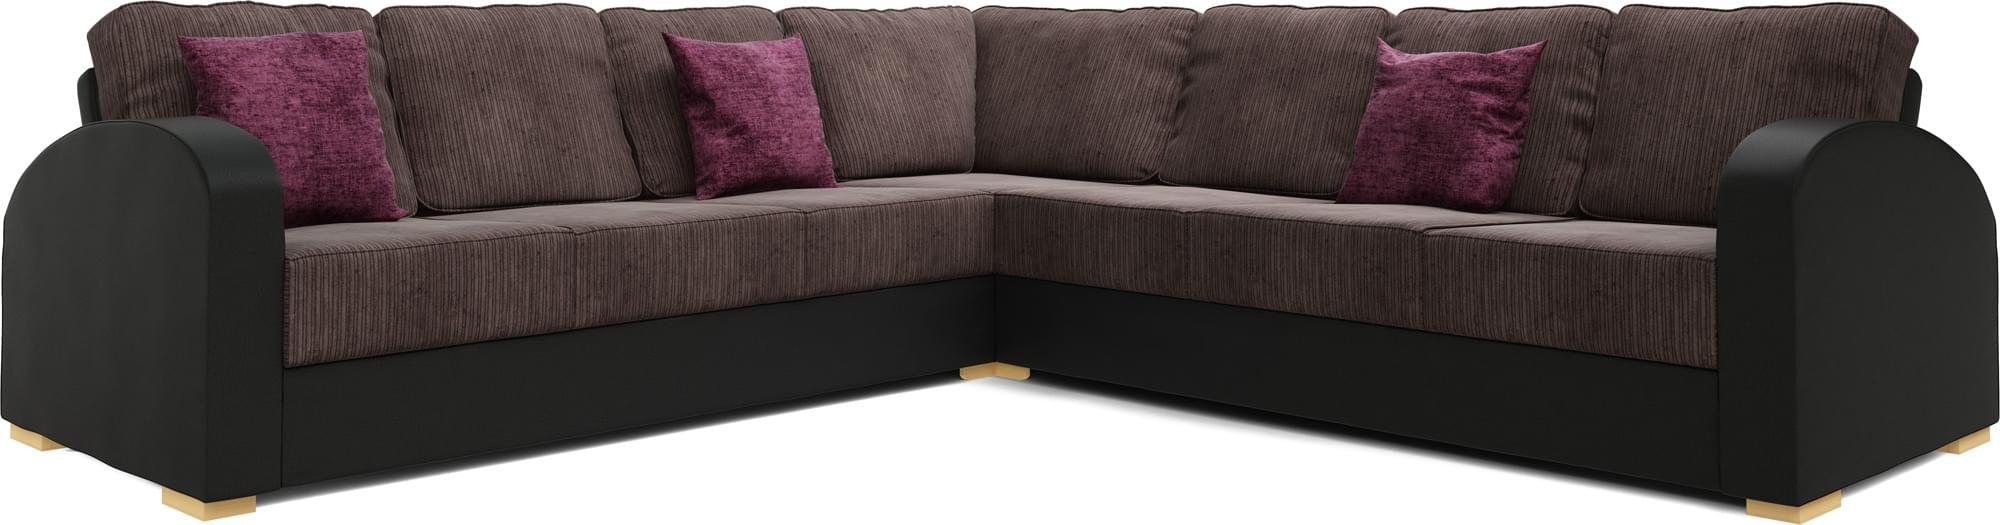 Orb 4x4 Corner Double Sofa Bed